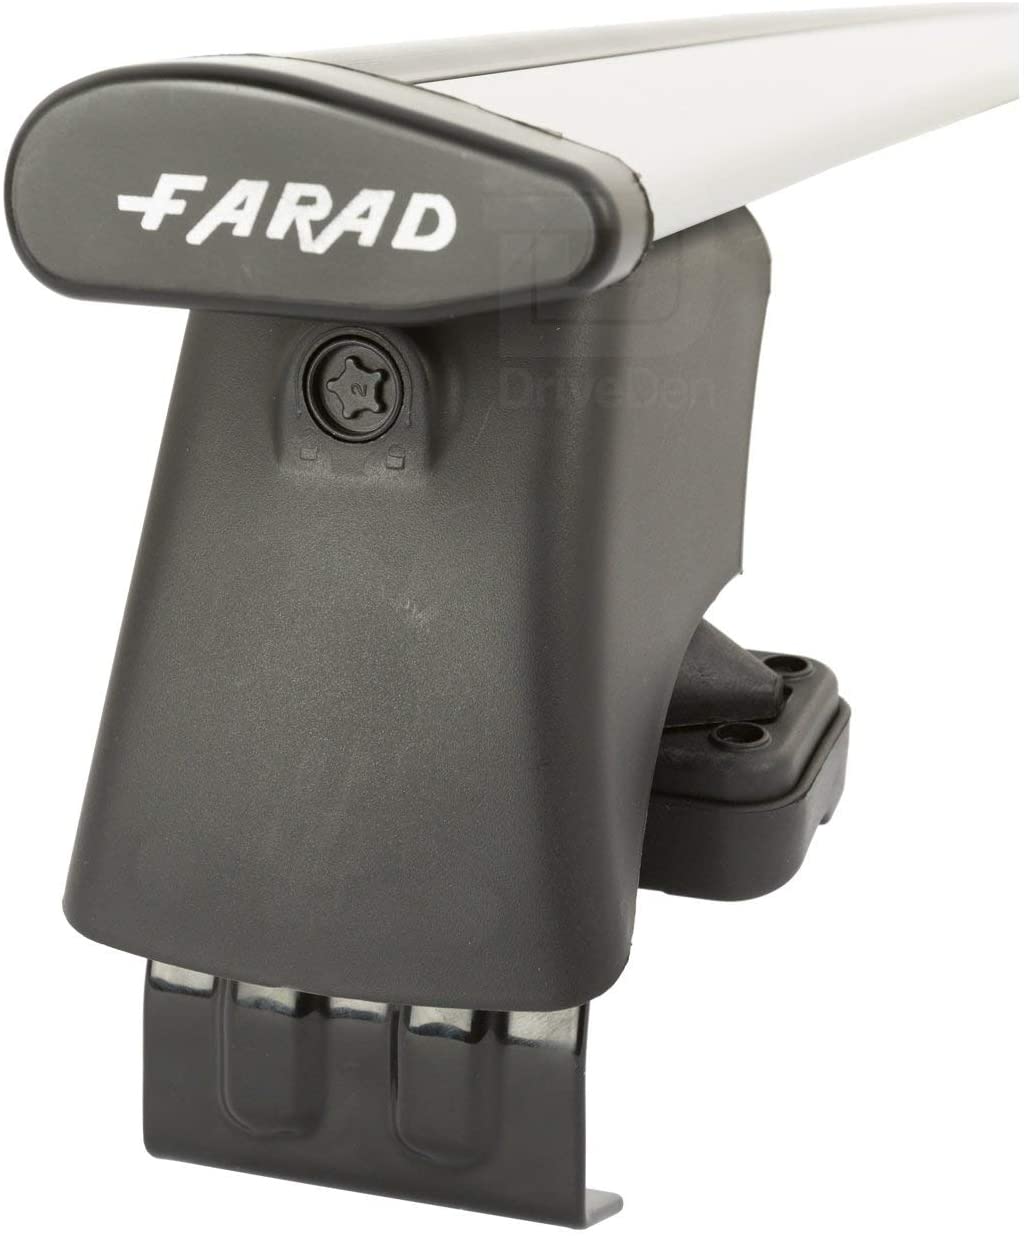 FARAD-Kit H2 per barre portatutto - Seat Alhambra 2011> (senza corrimano)